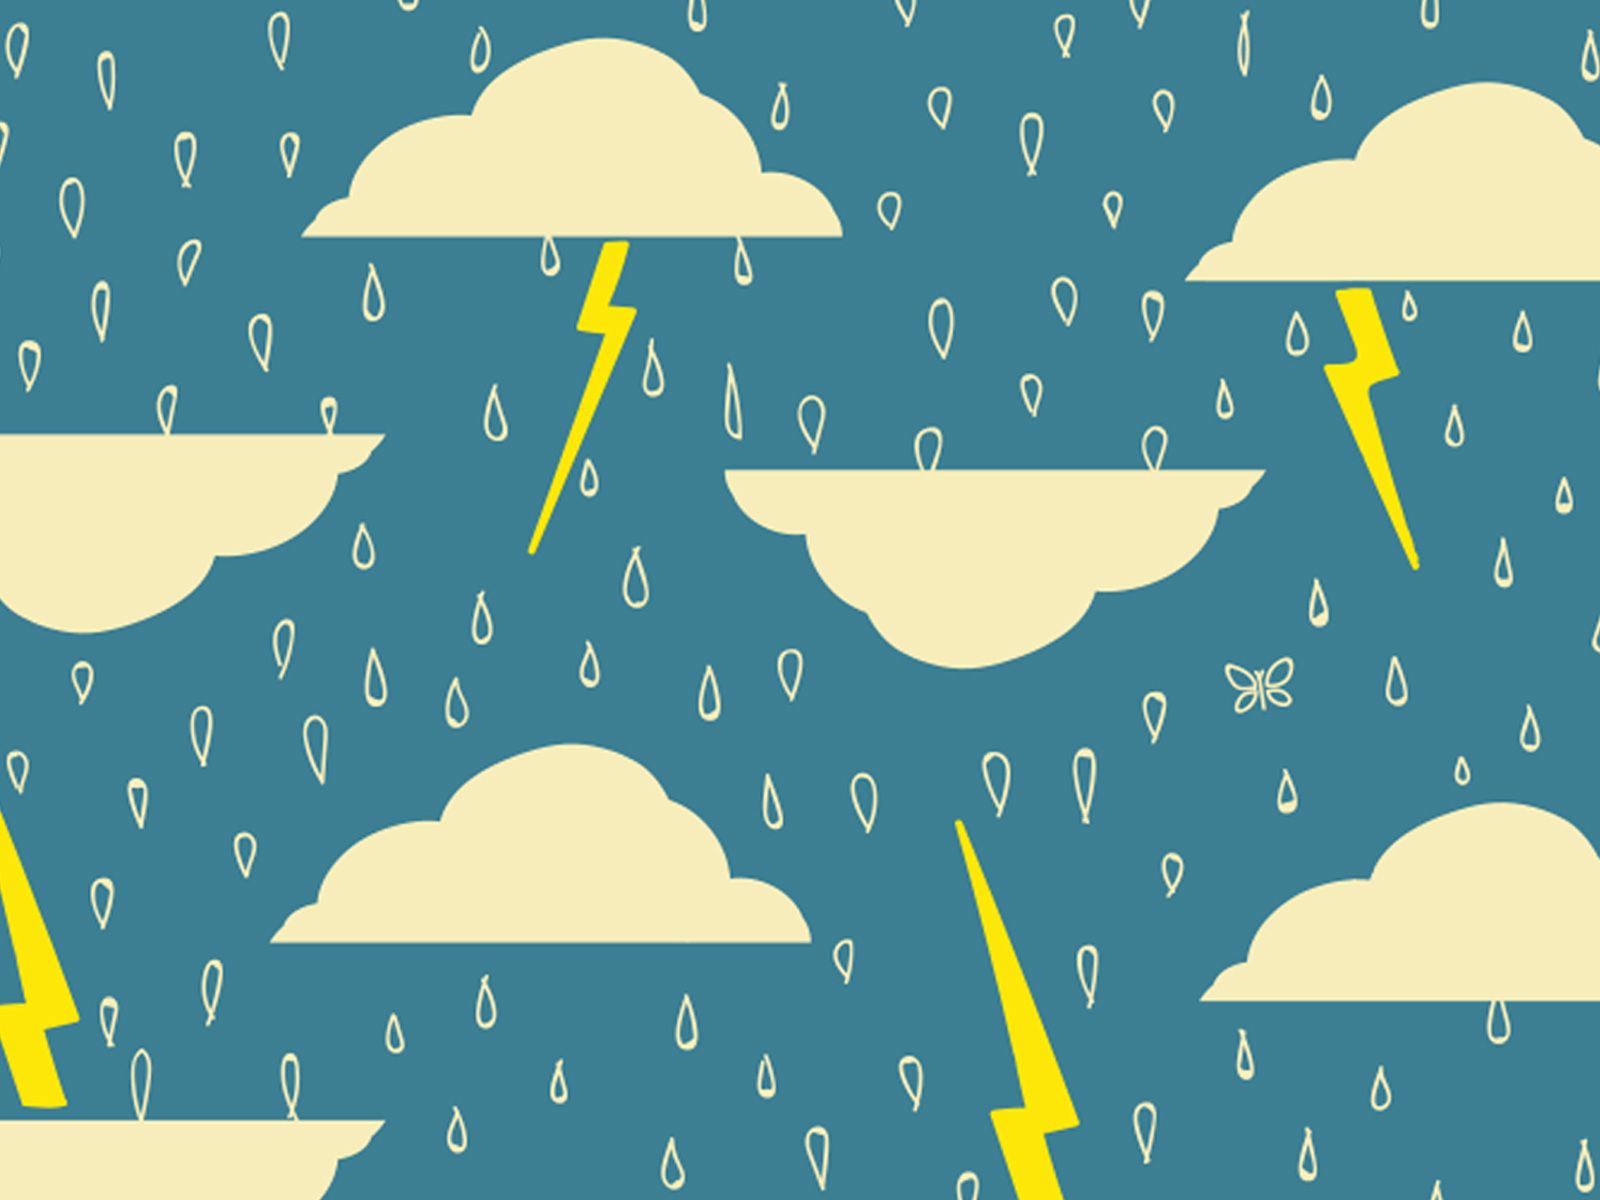 عکس کارتونی ابر و باران و رعدوبرق در آسمان سبز آبی 